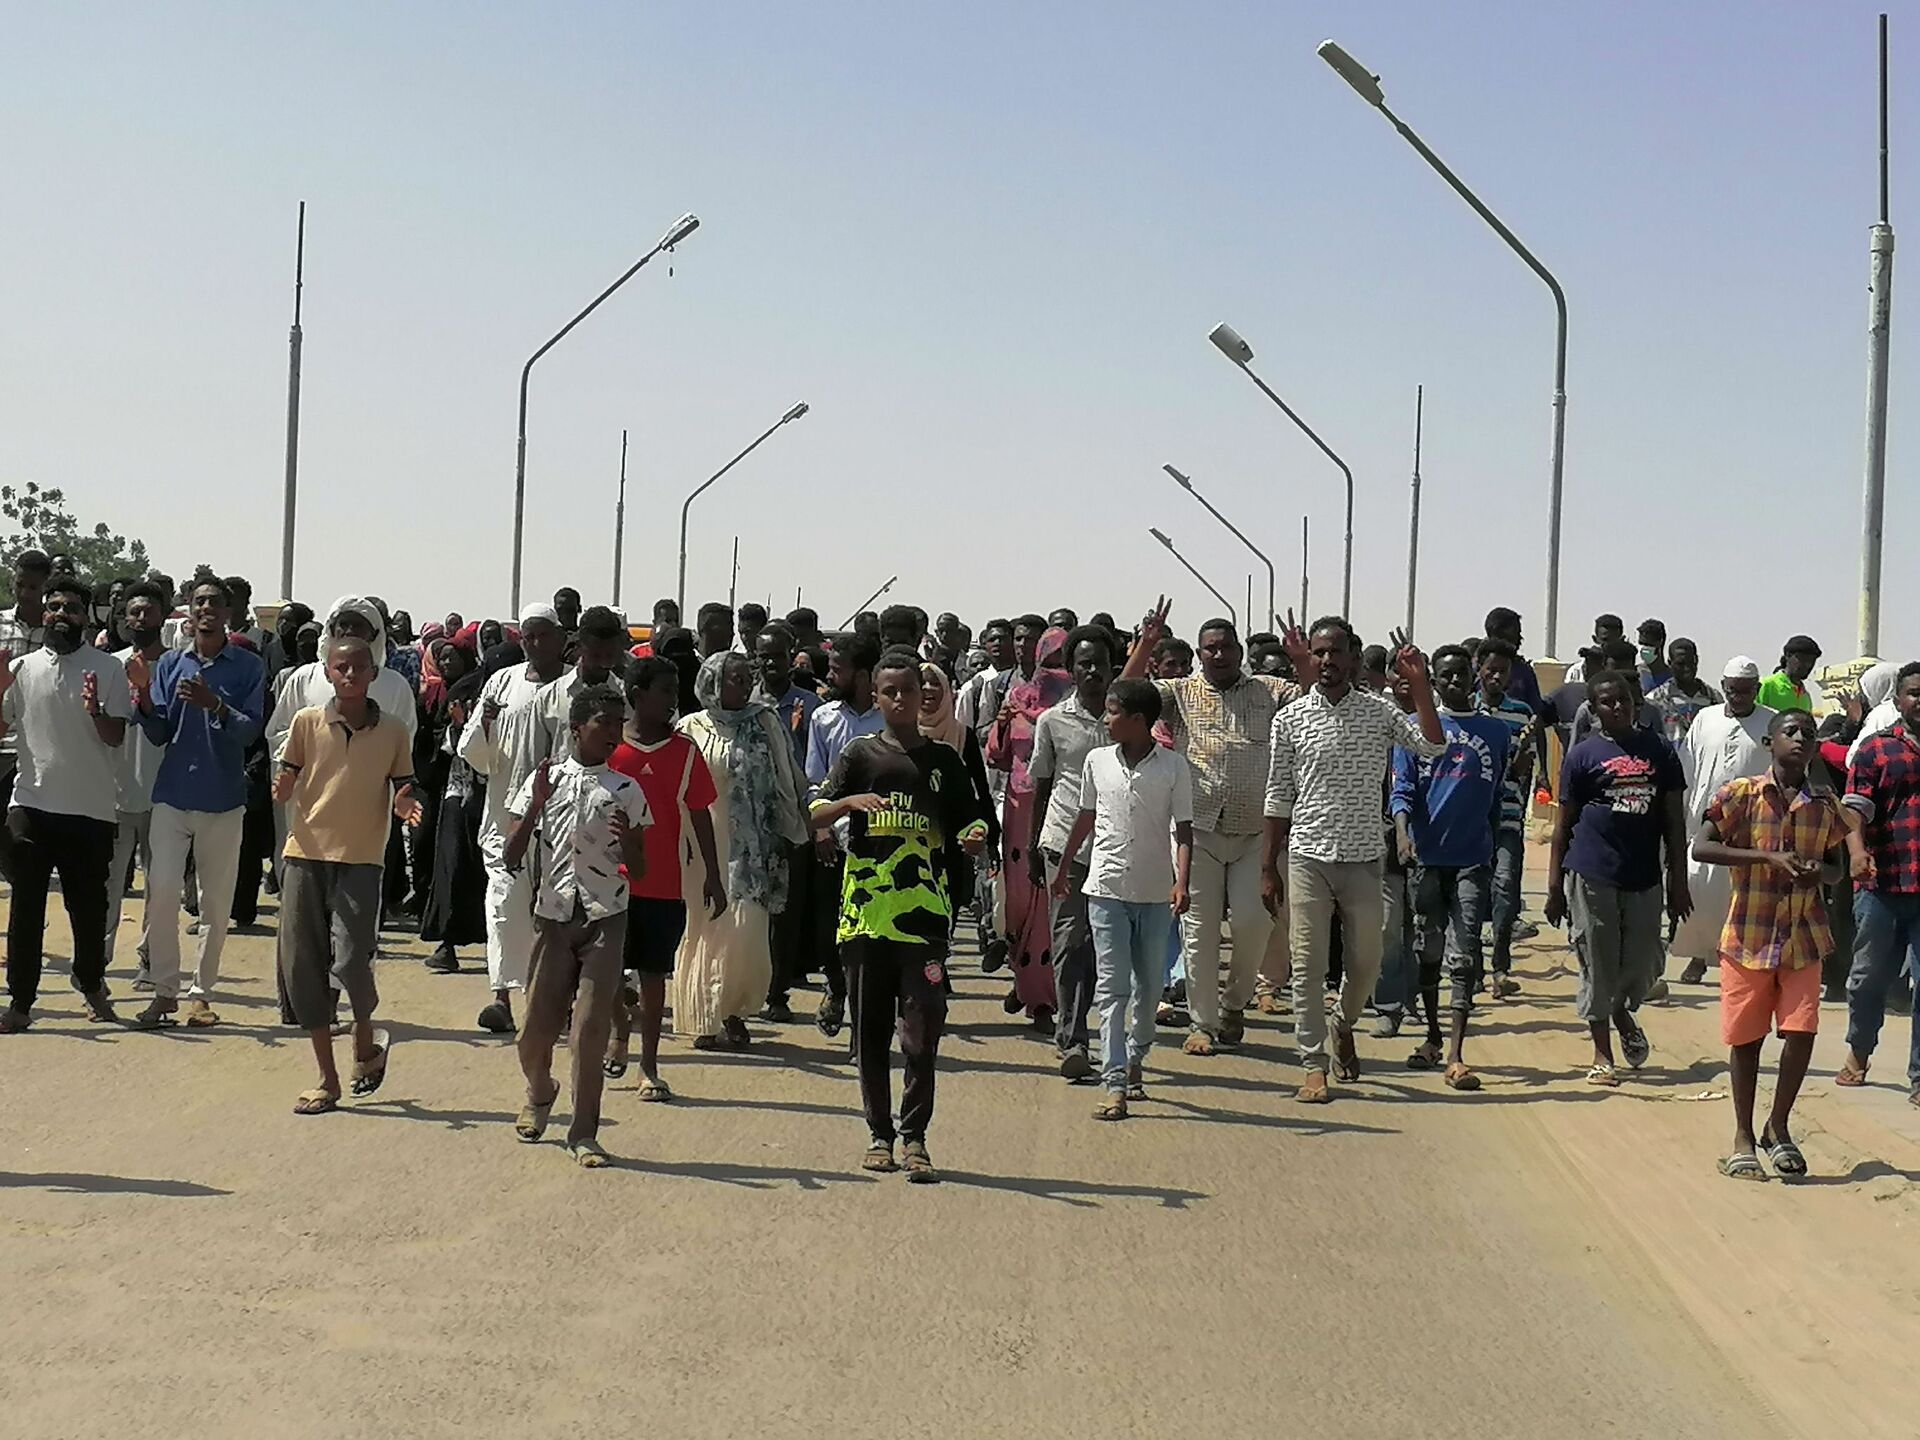 Manifestantes sudaneses durante protestos contra golpe militar no país, Atbara, Sudão, 27 de outubro de 2021 - Sputnik Brasil, 1920, 09.11.2021